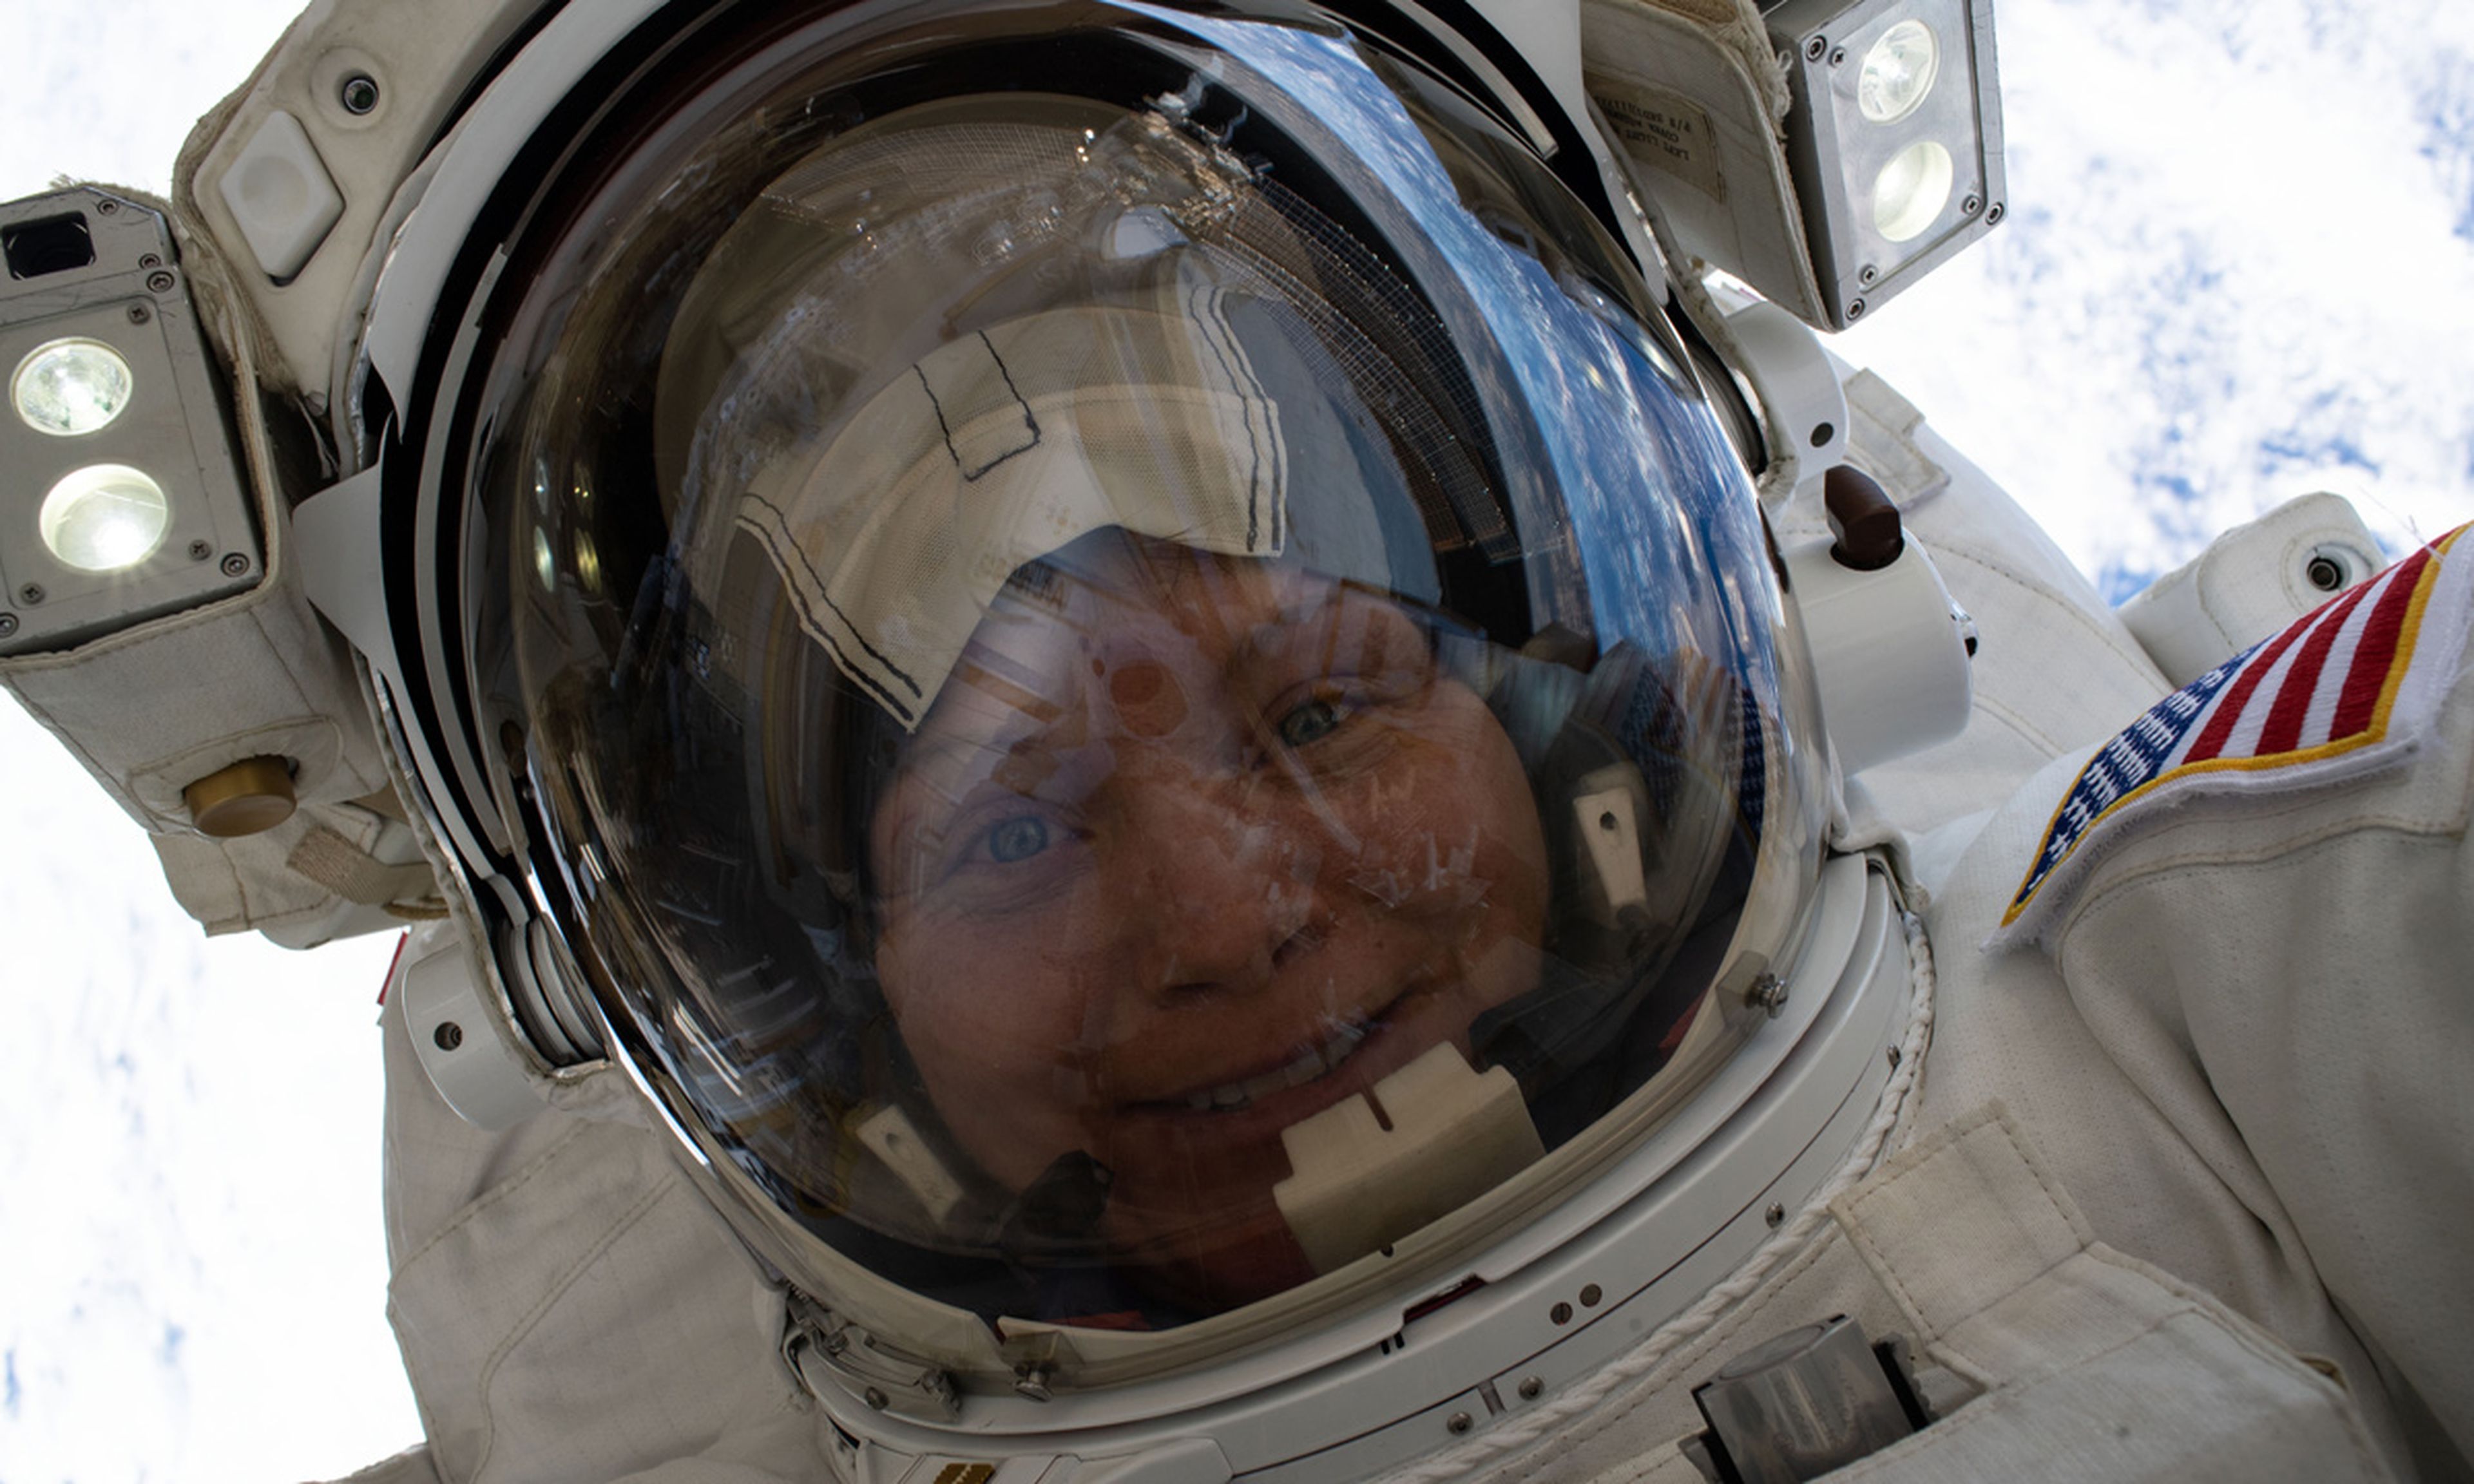 La coronel McClain se hizo este 'selfie' durante uno de sus paseos espaciales.